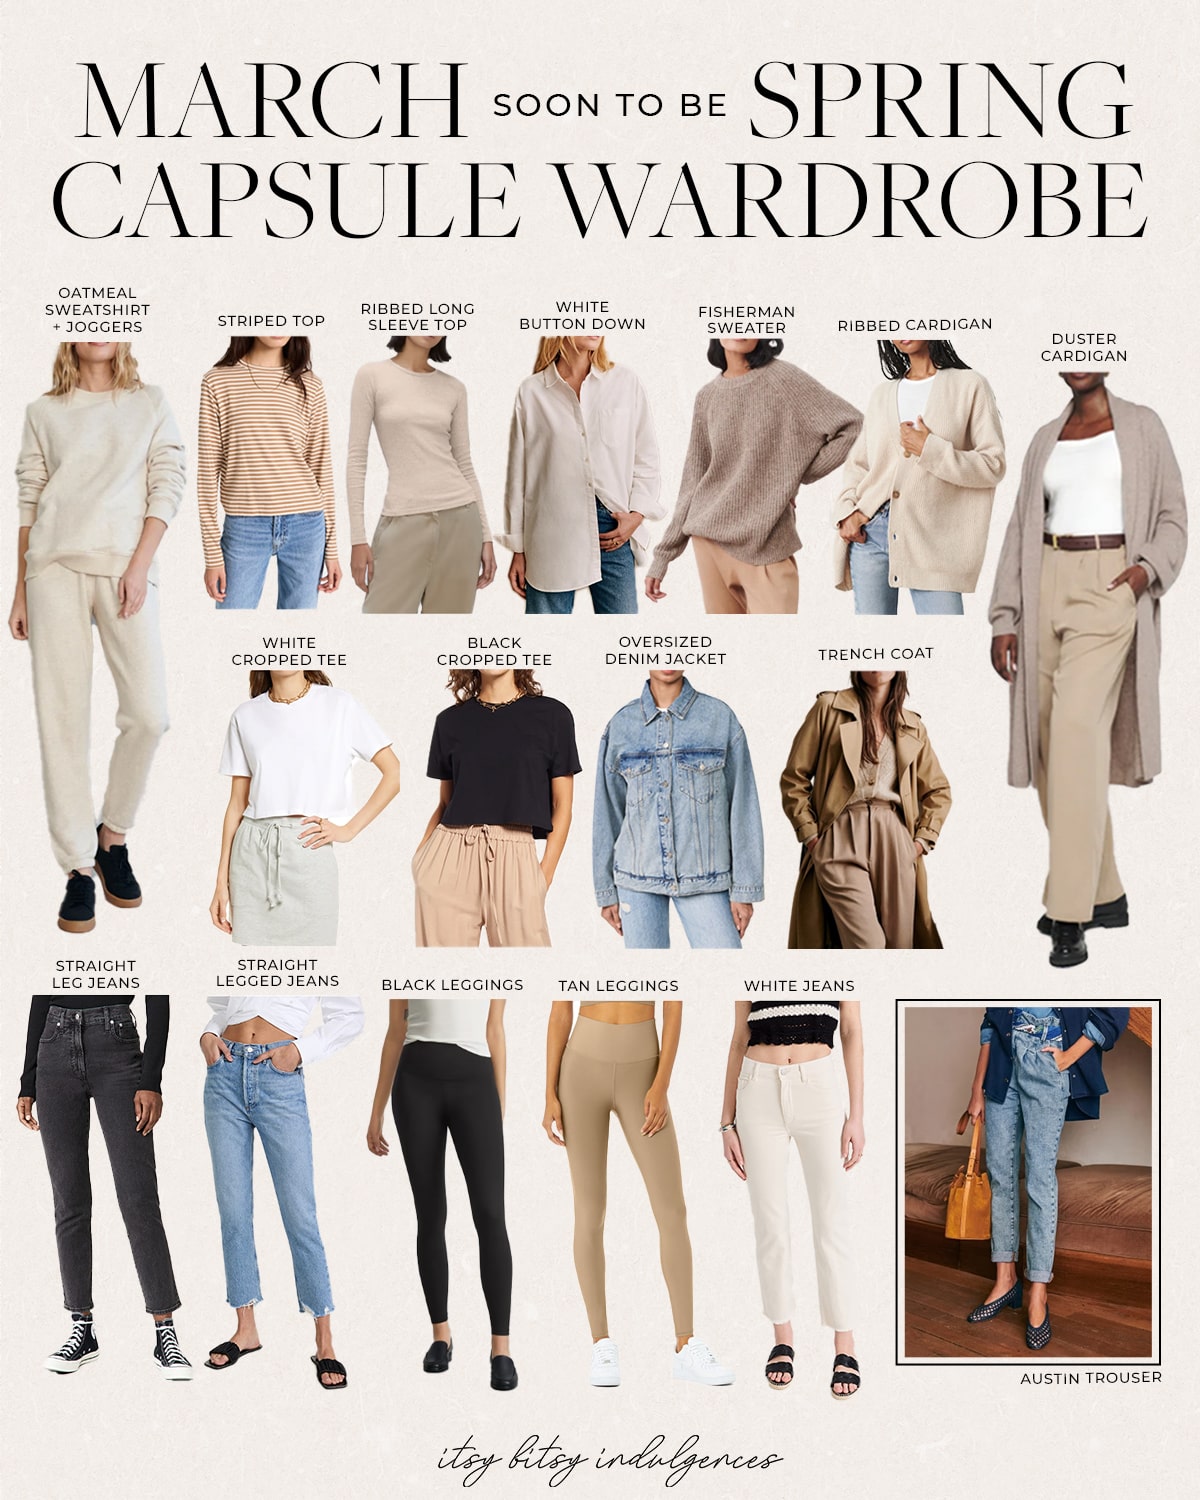 March's Capsule Wardrobe - Itsy Bitsy Indulgences